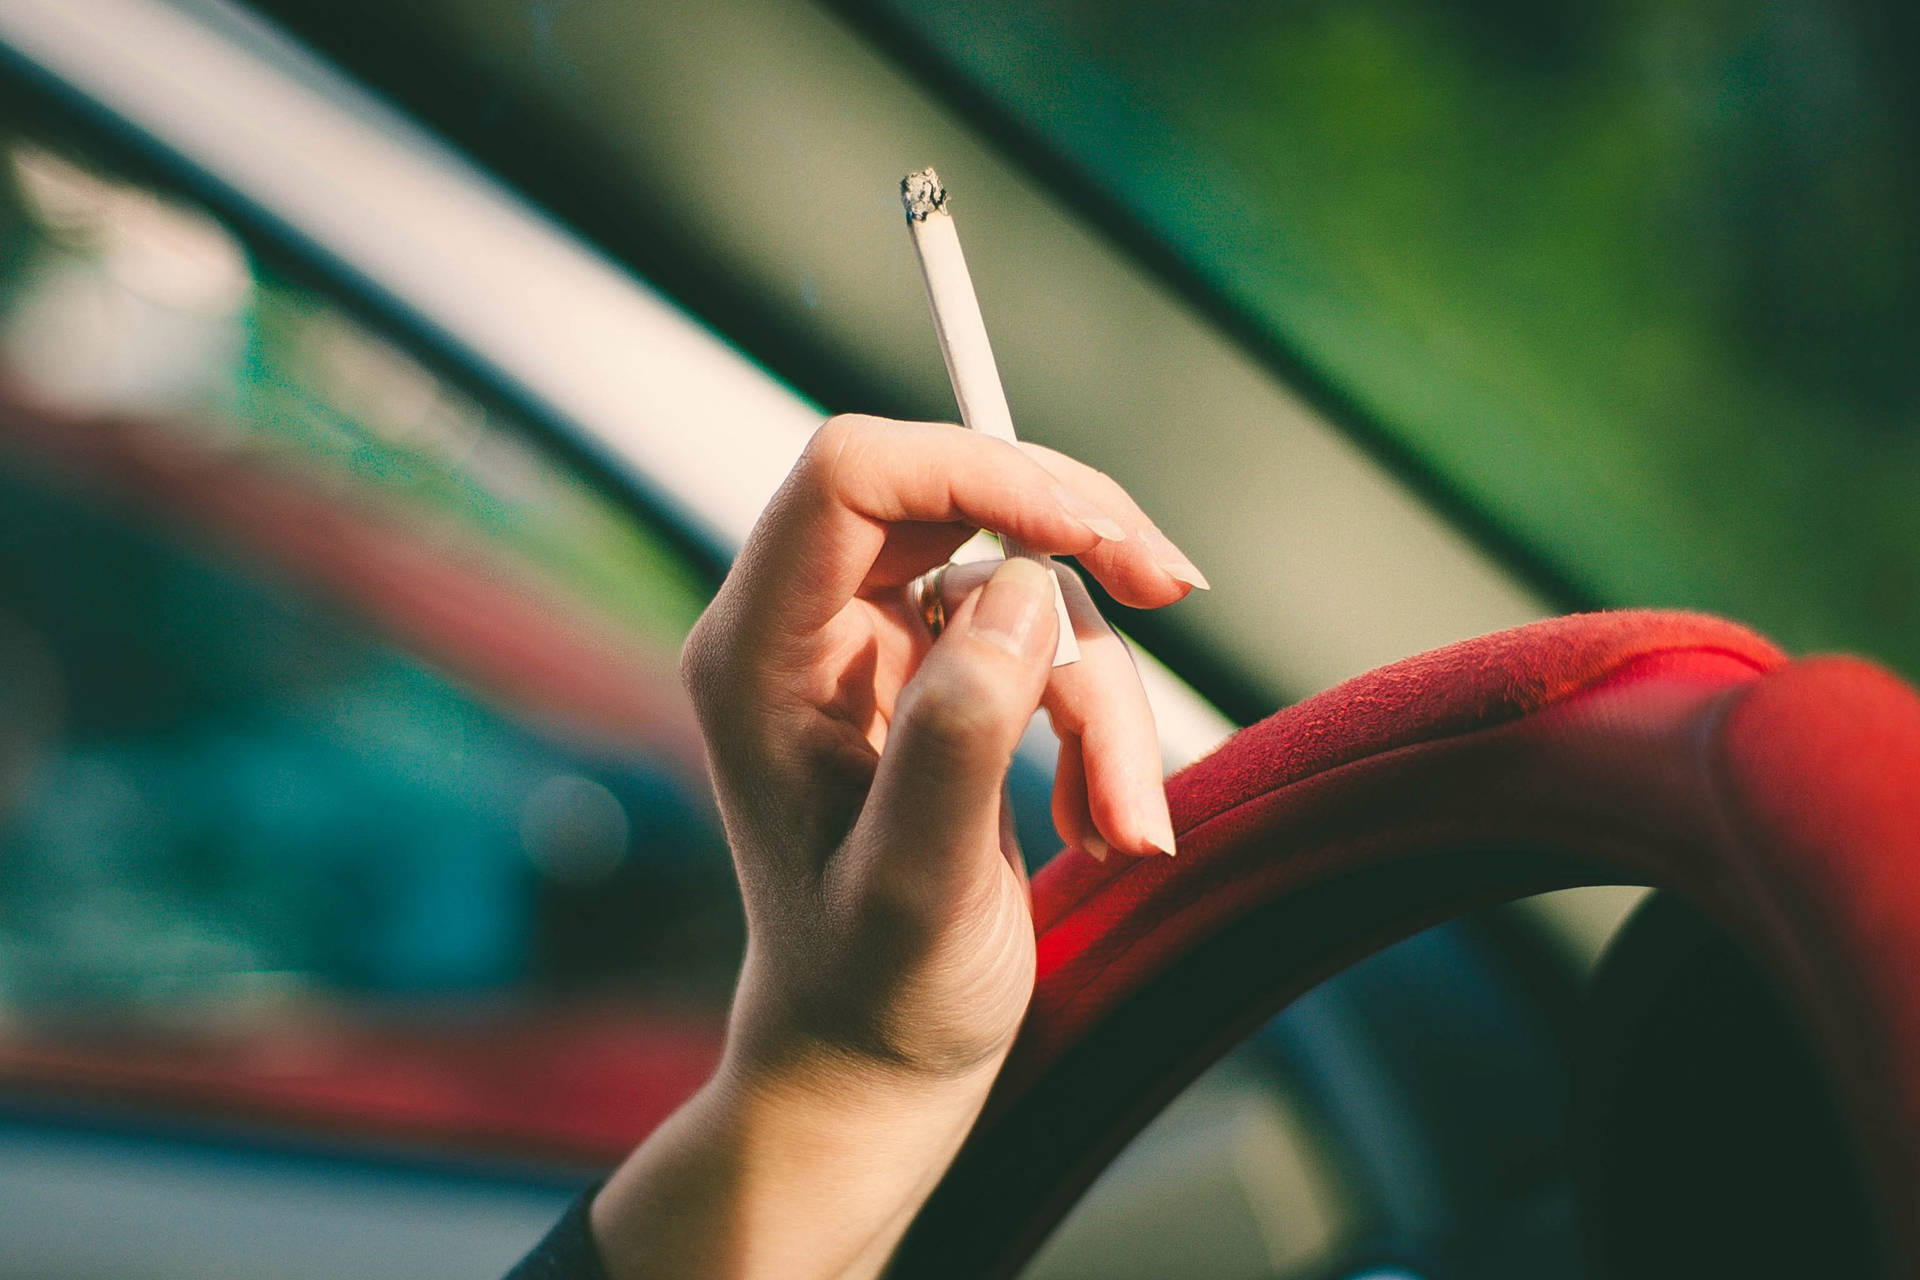 Smoking In Car